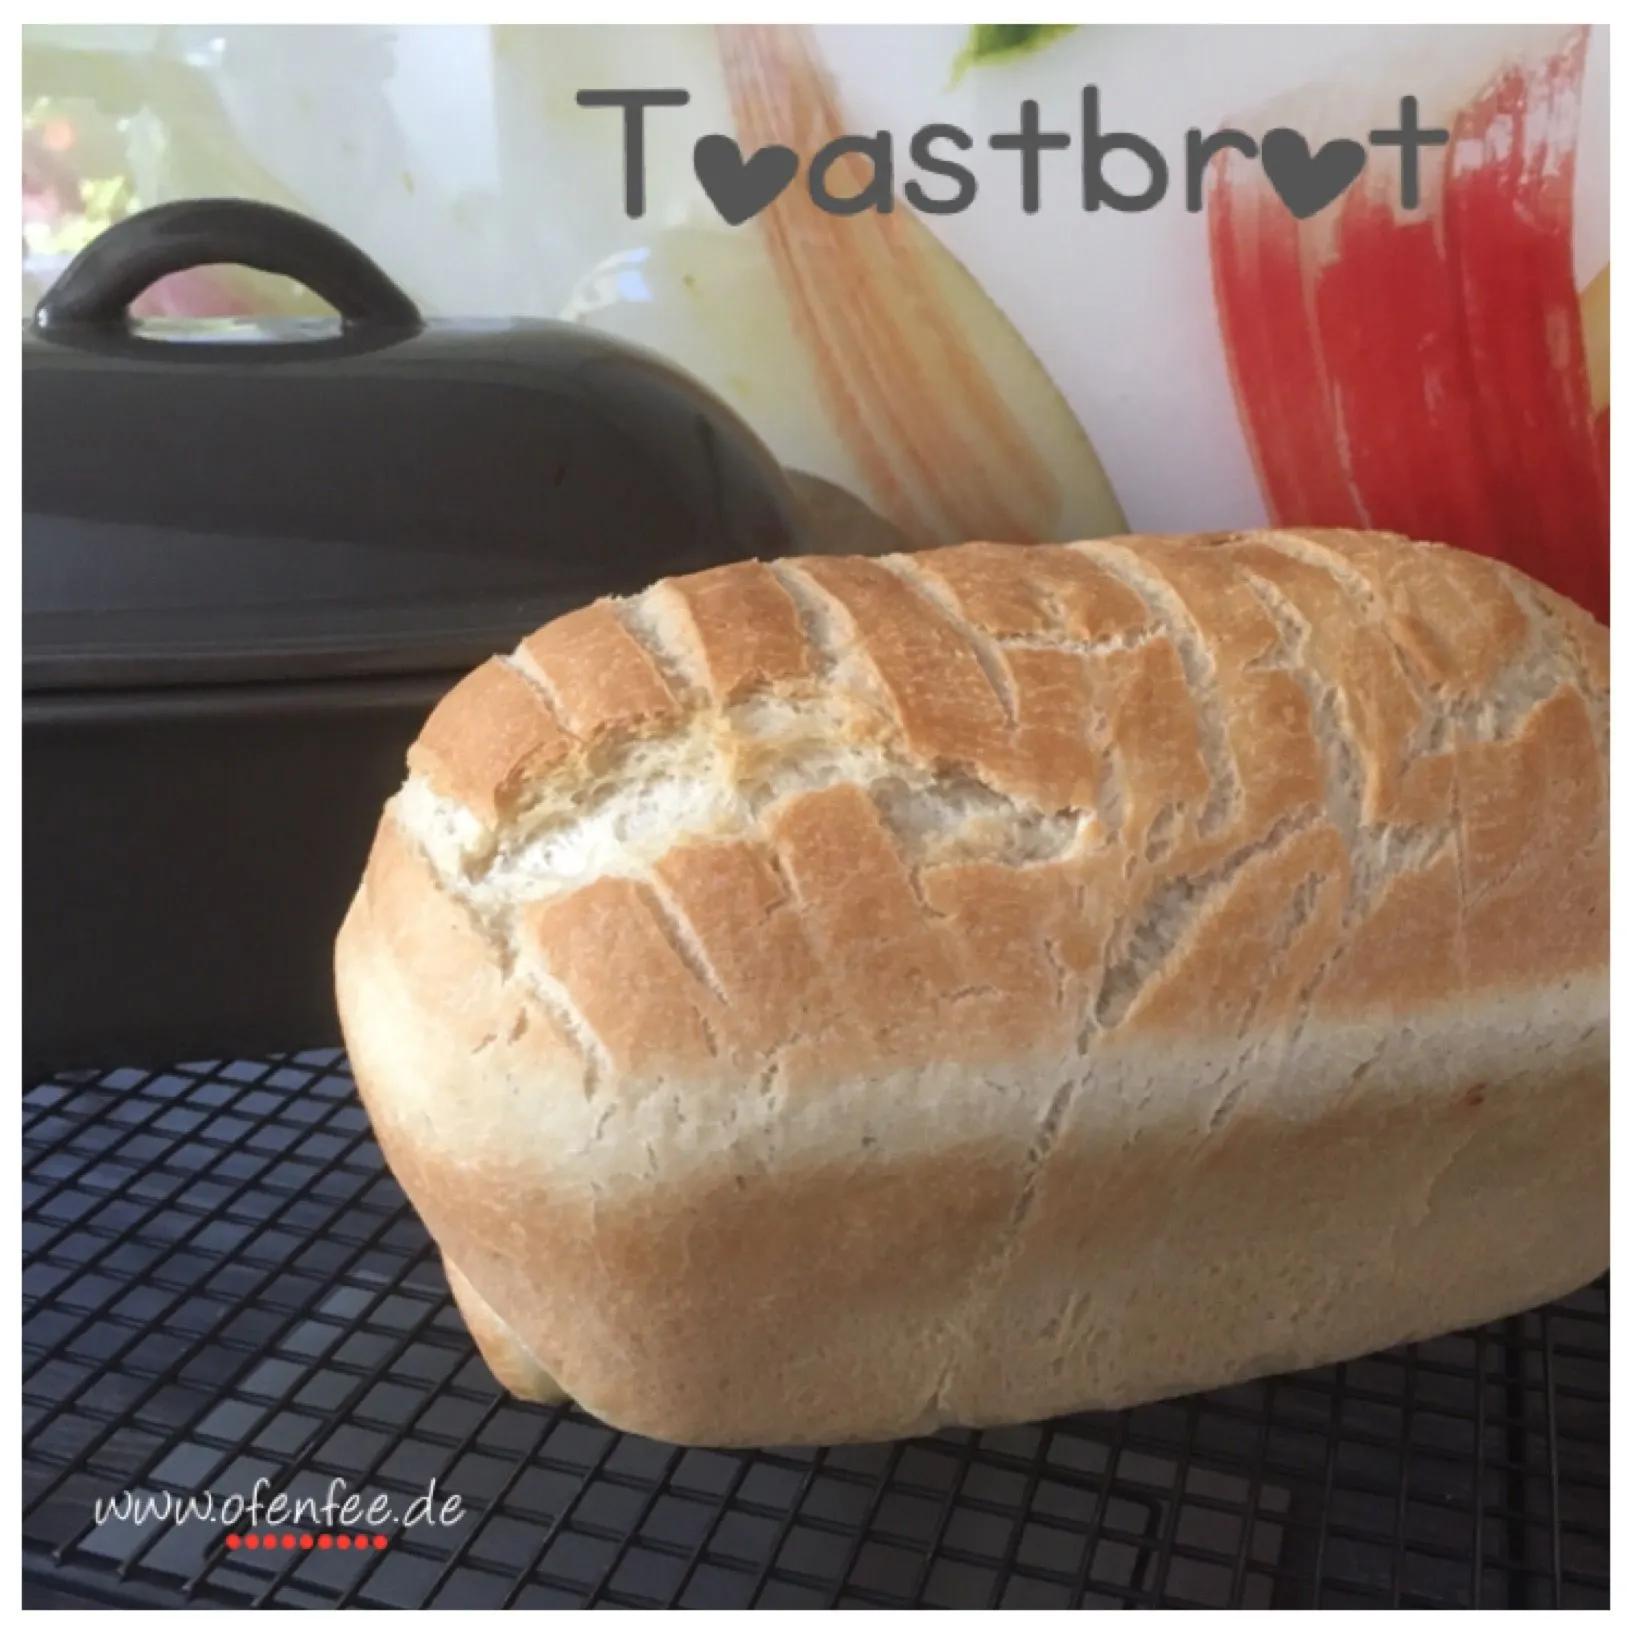 Toastbrot aus dem kleinen Zaubermeister von Pampered Chef®️ | Brot ...